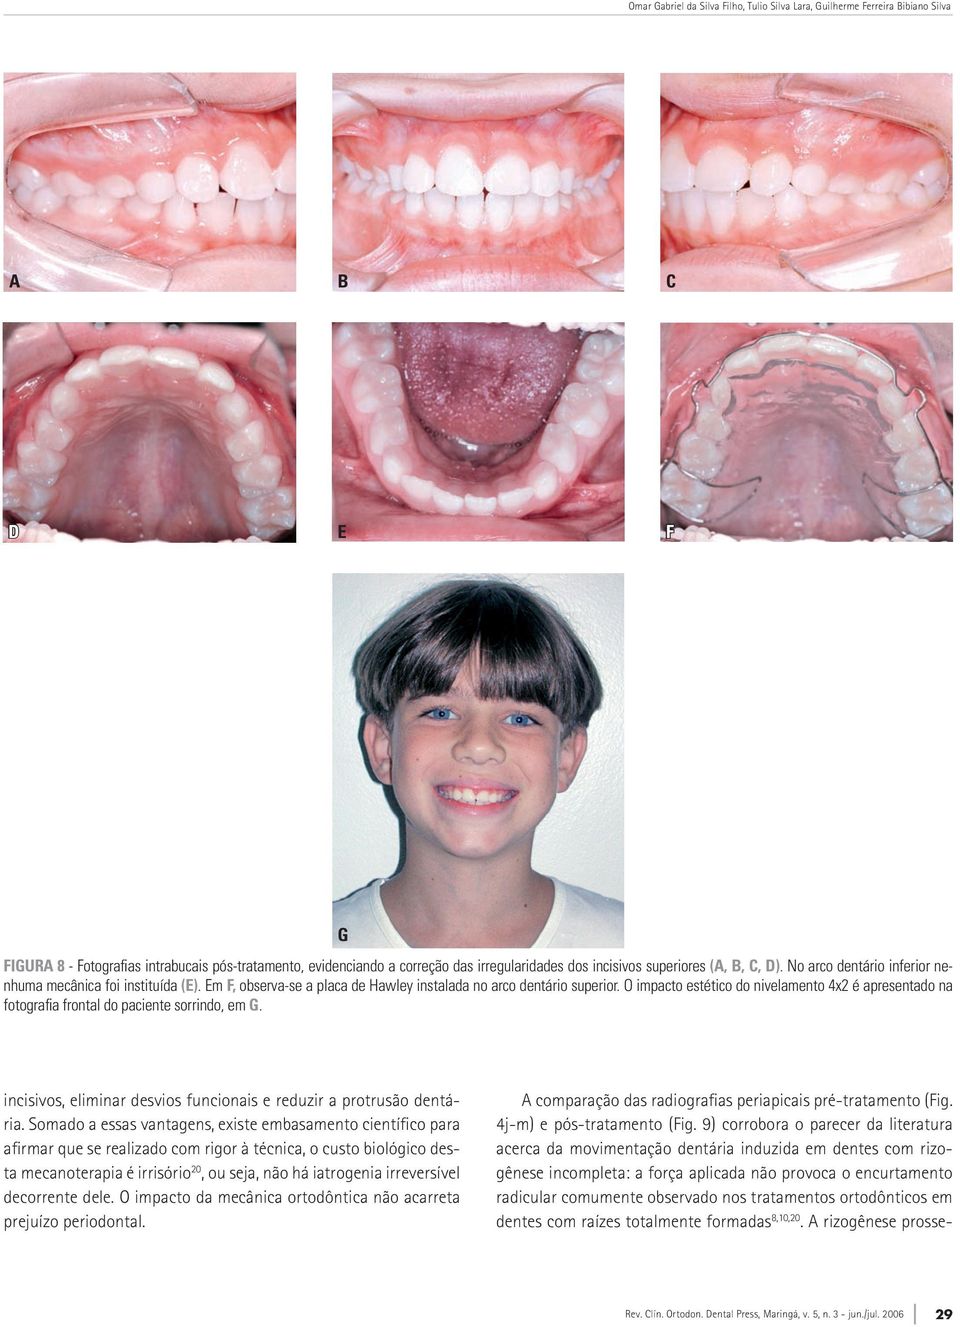 O impacto estético do nivelamento 4x2 é apresentado na fotografia frontal do paciente sorrindo, em G. incisivos, eliminar desvios funcionais e reduzir a protrusão dentária.